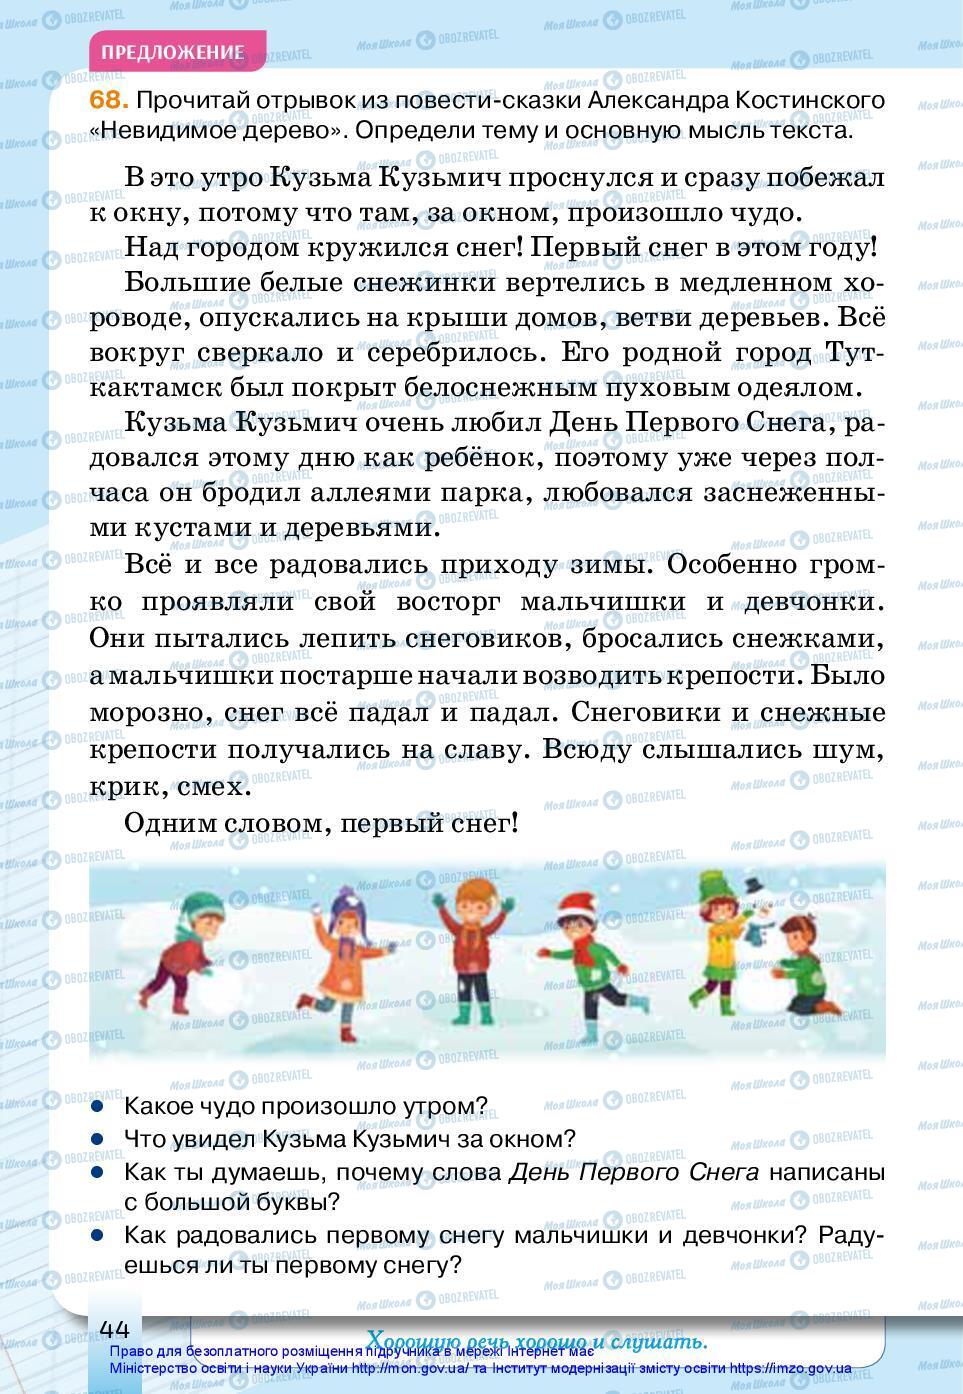 Підручники Російська мова 3 клас сторінка 44